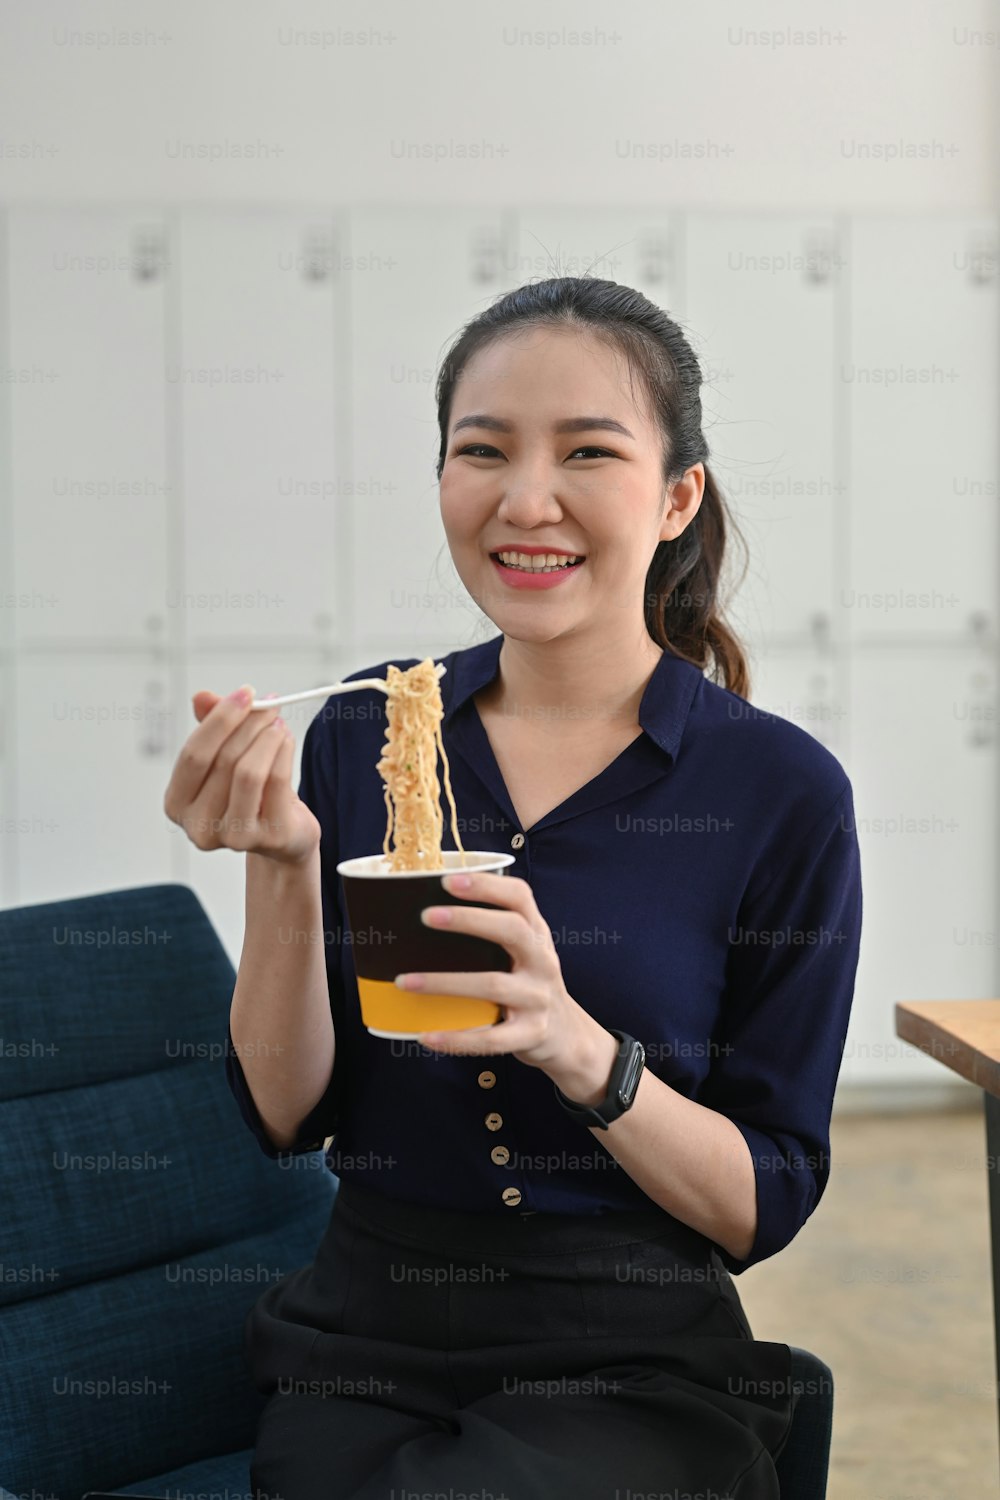 オフィスでインスタントラーメンを食べるプラスチック製のフォークを持っている笑顔のアジア人女性。